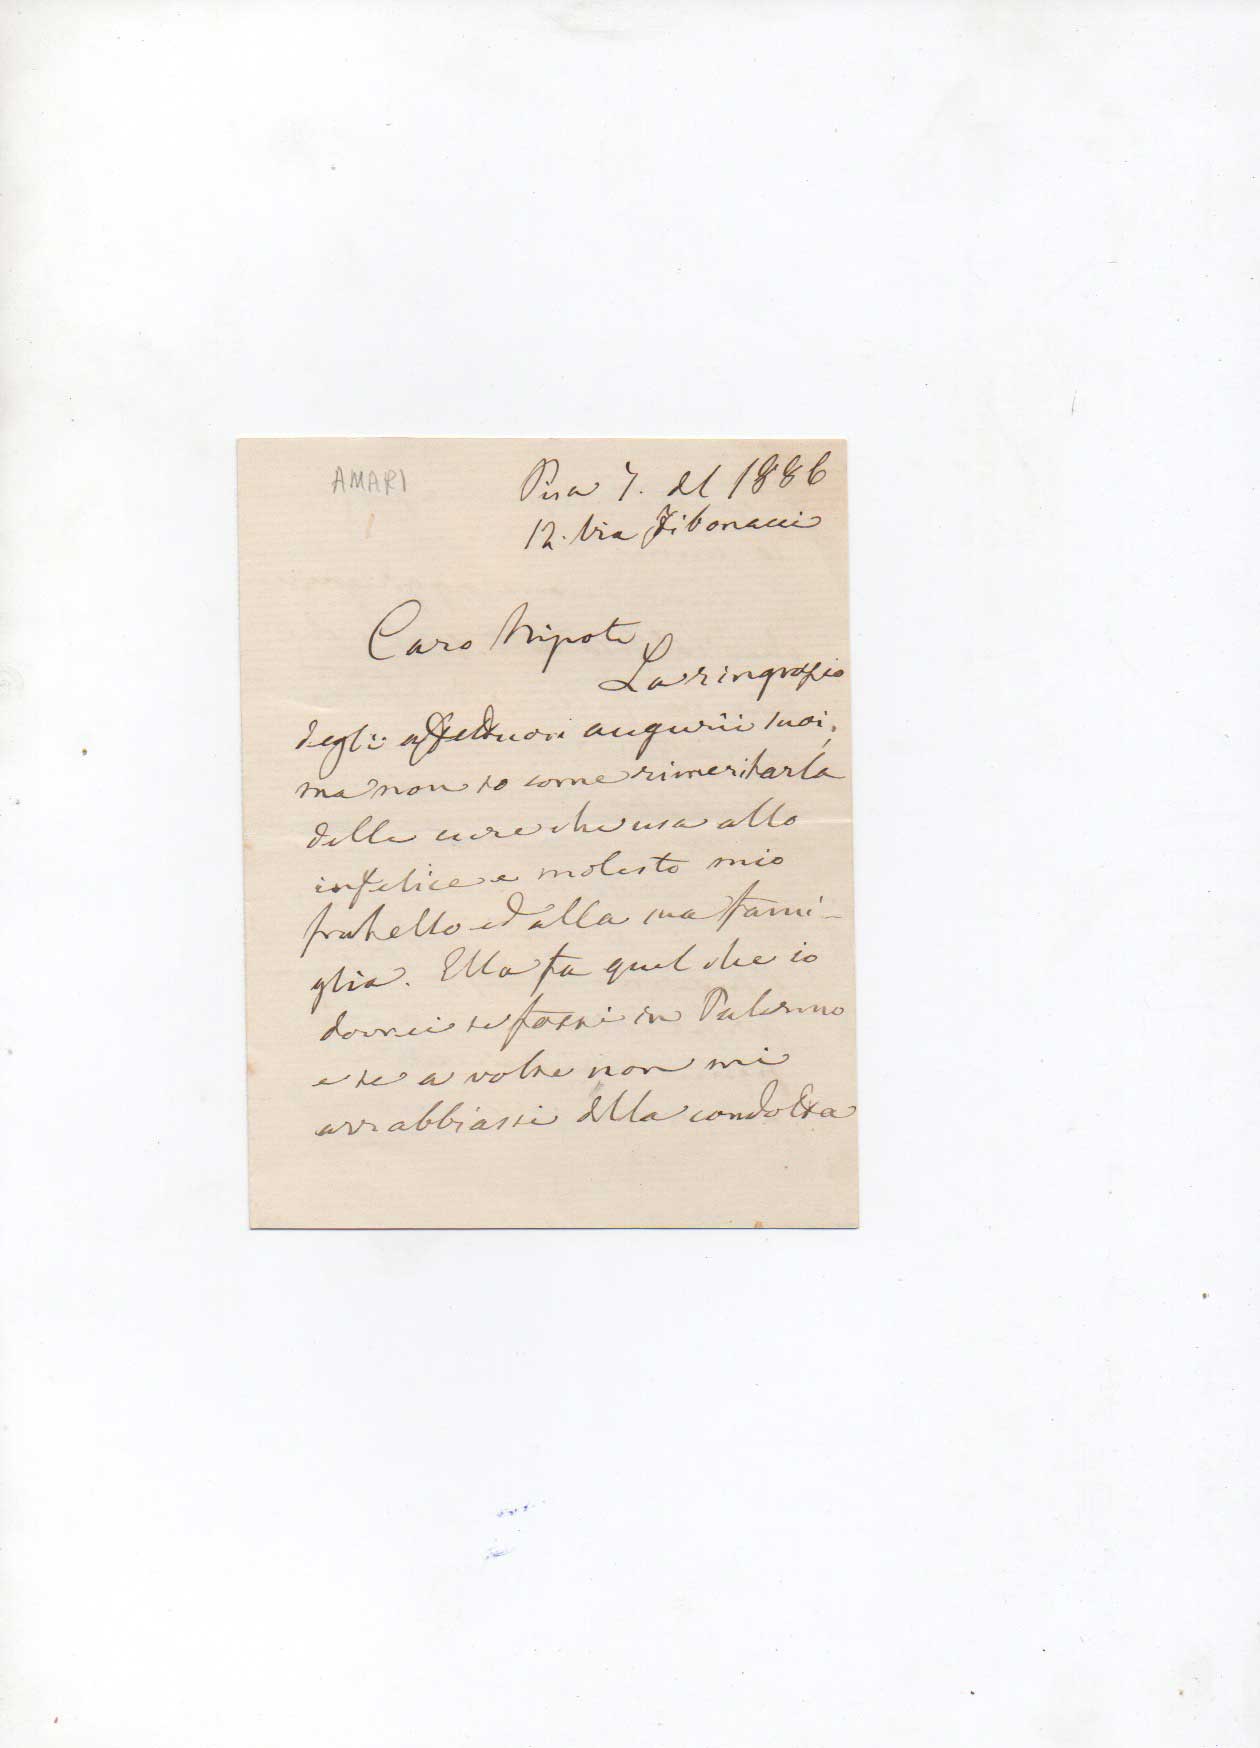 lettera autografa firmata inviata da pisa al nipote biagio la manna a palermo. datata 1886